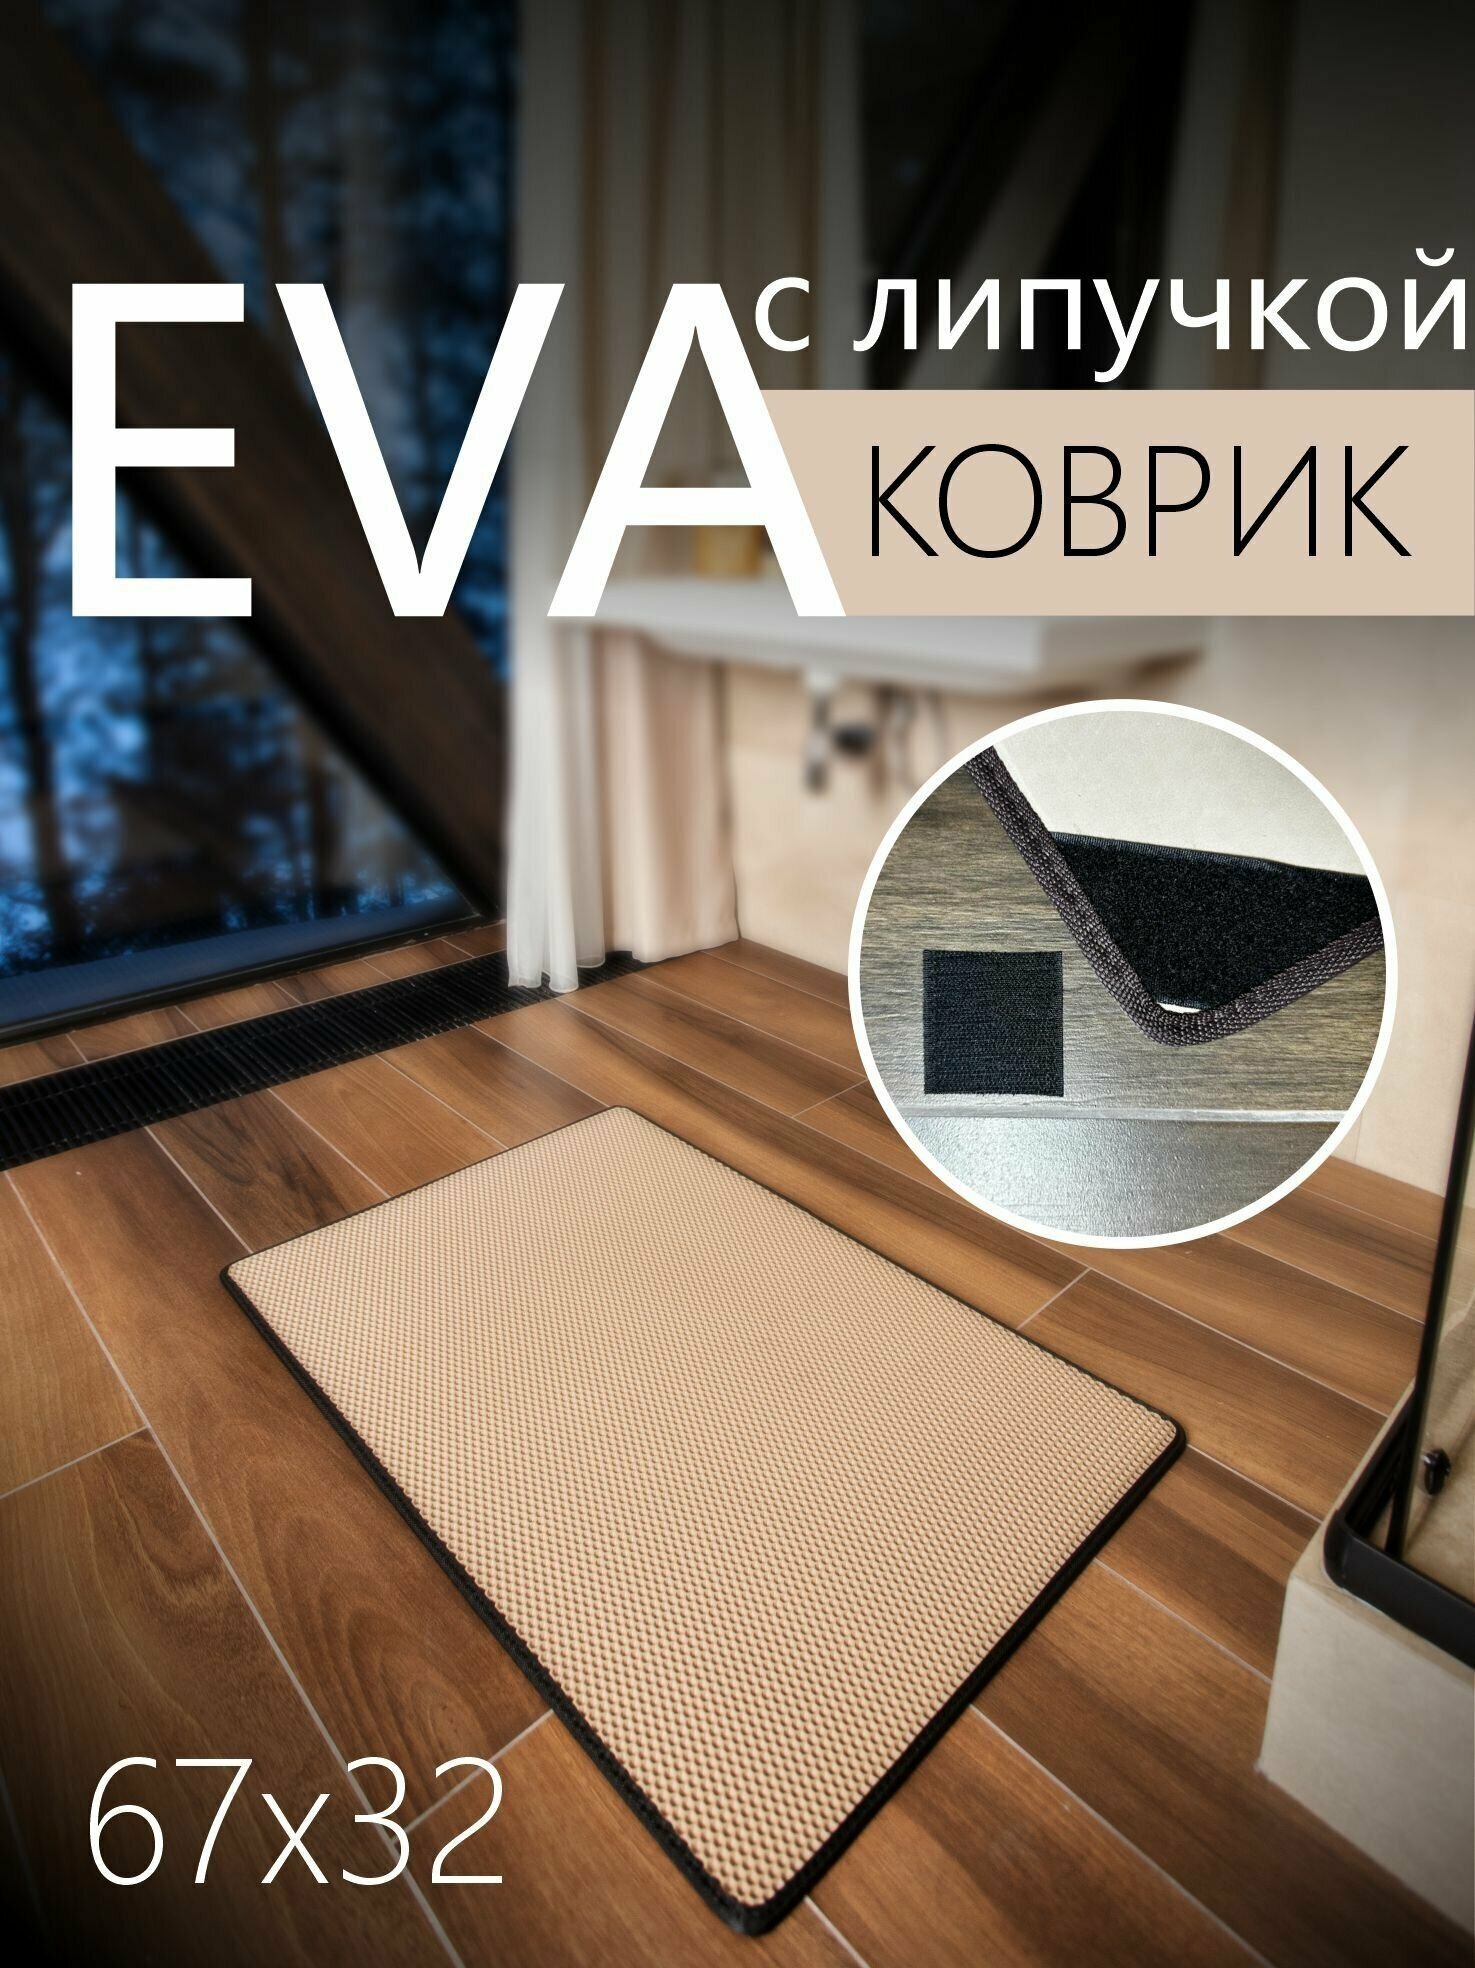 Коврик придверный противоскользящий EVA ЭВА универсальный 67х32 сантиметра. Липучки для фиксации. Соты Бежевый с черной окантовкой